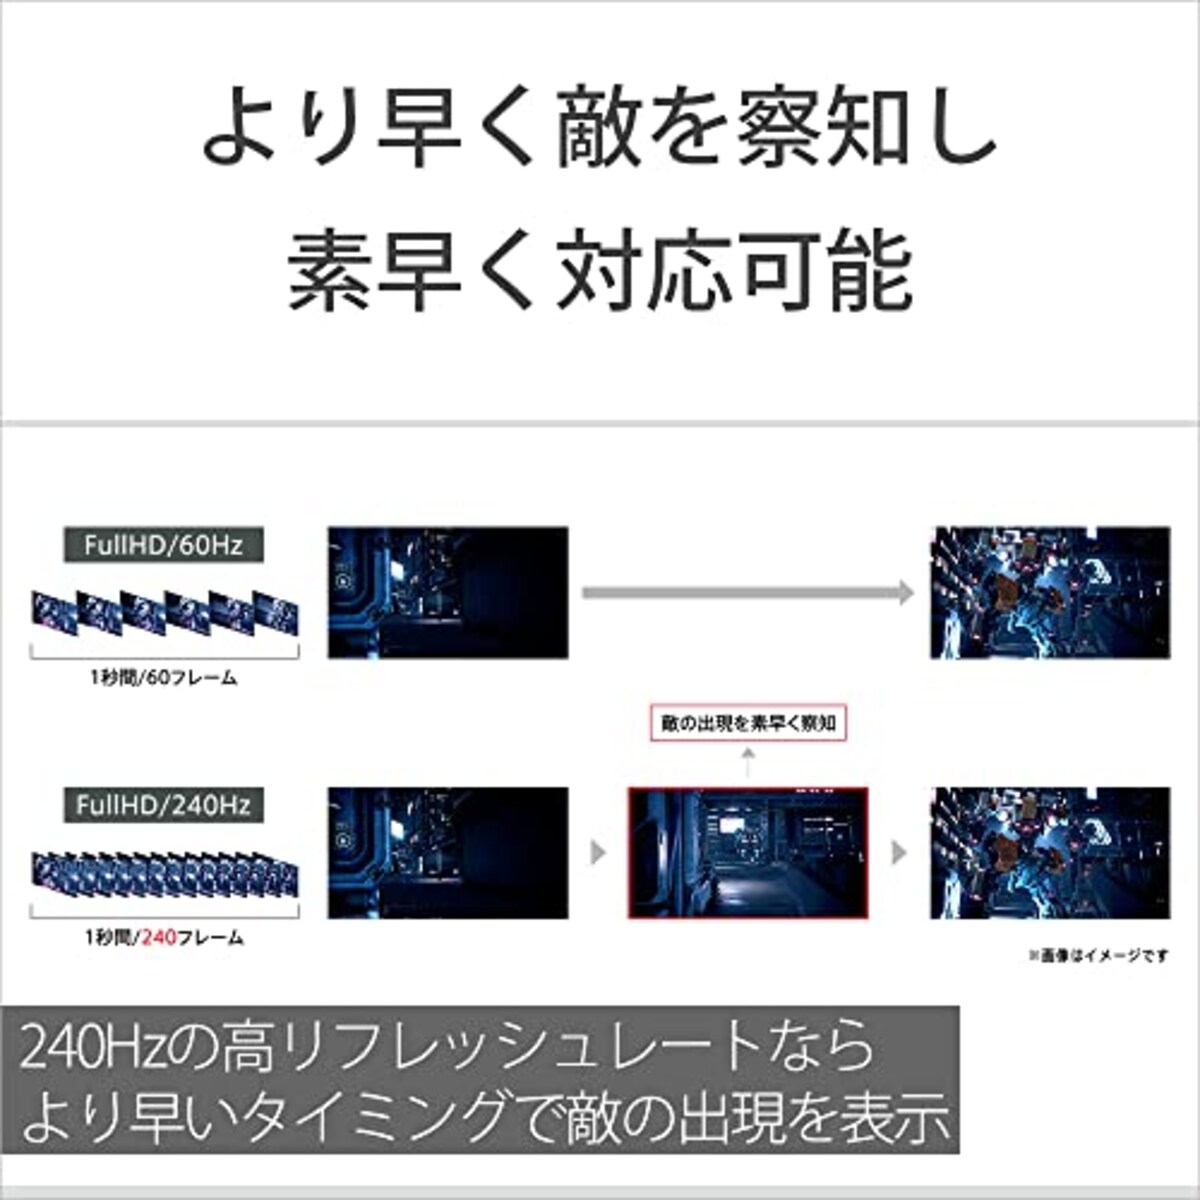  ソニー ゲーミングモニター INZONE M3 SDM-F27M30:2K 27インチ/リフレッシュレート240Hz/応答速度1ms GTG対応/チラつきやカクツキを軽減/sRGBカバー率99%/最大輝度400nit/PlayStation(R)5との連携/EVO Japan 2023公式競技ギア画像5 